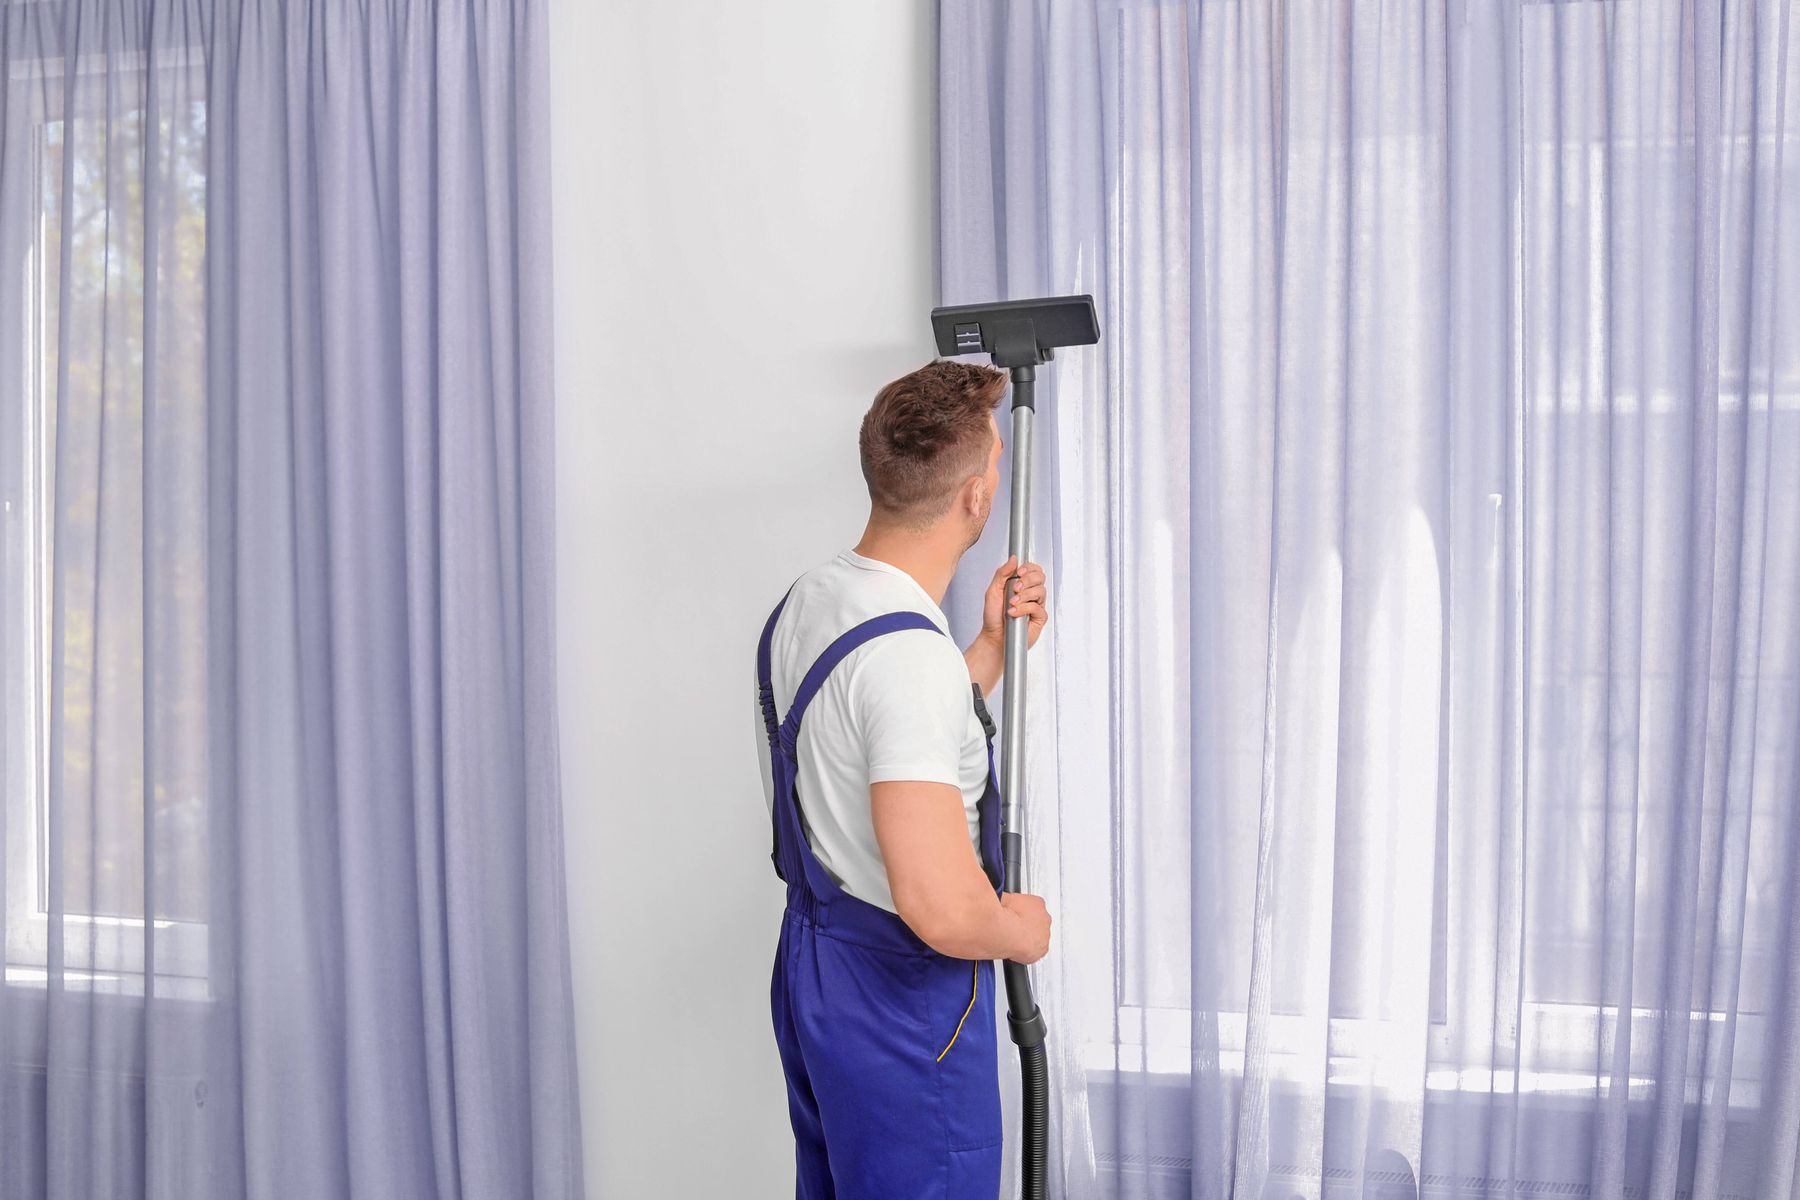 Hướng dẫn giặt màn rèm cửa đơn giản tại nhà. Dịch vụ giặt rèm cửa cao cấp 24/7